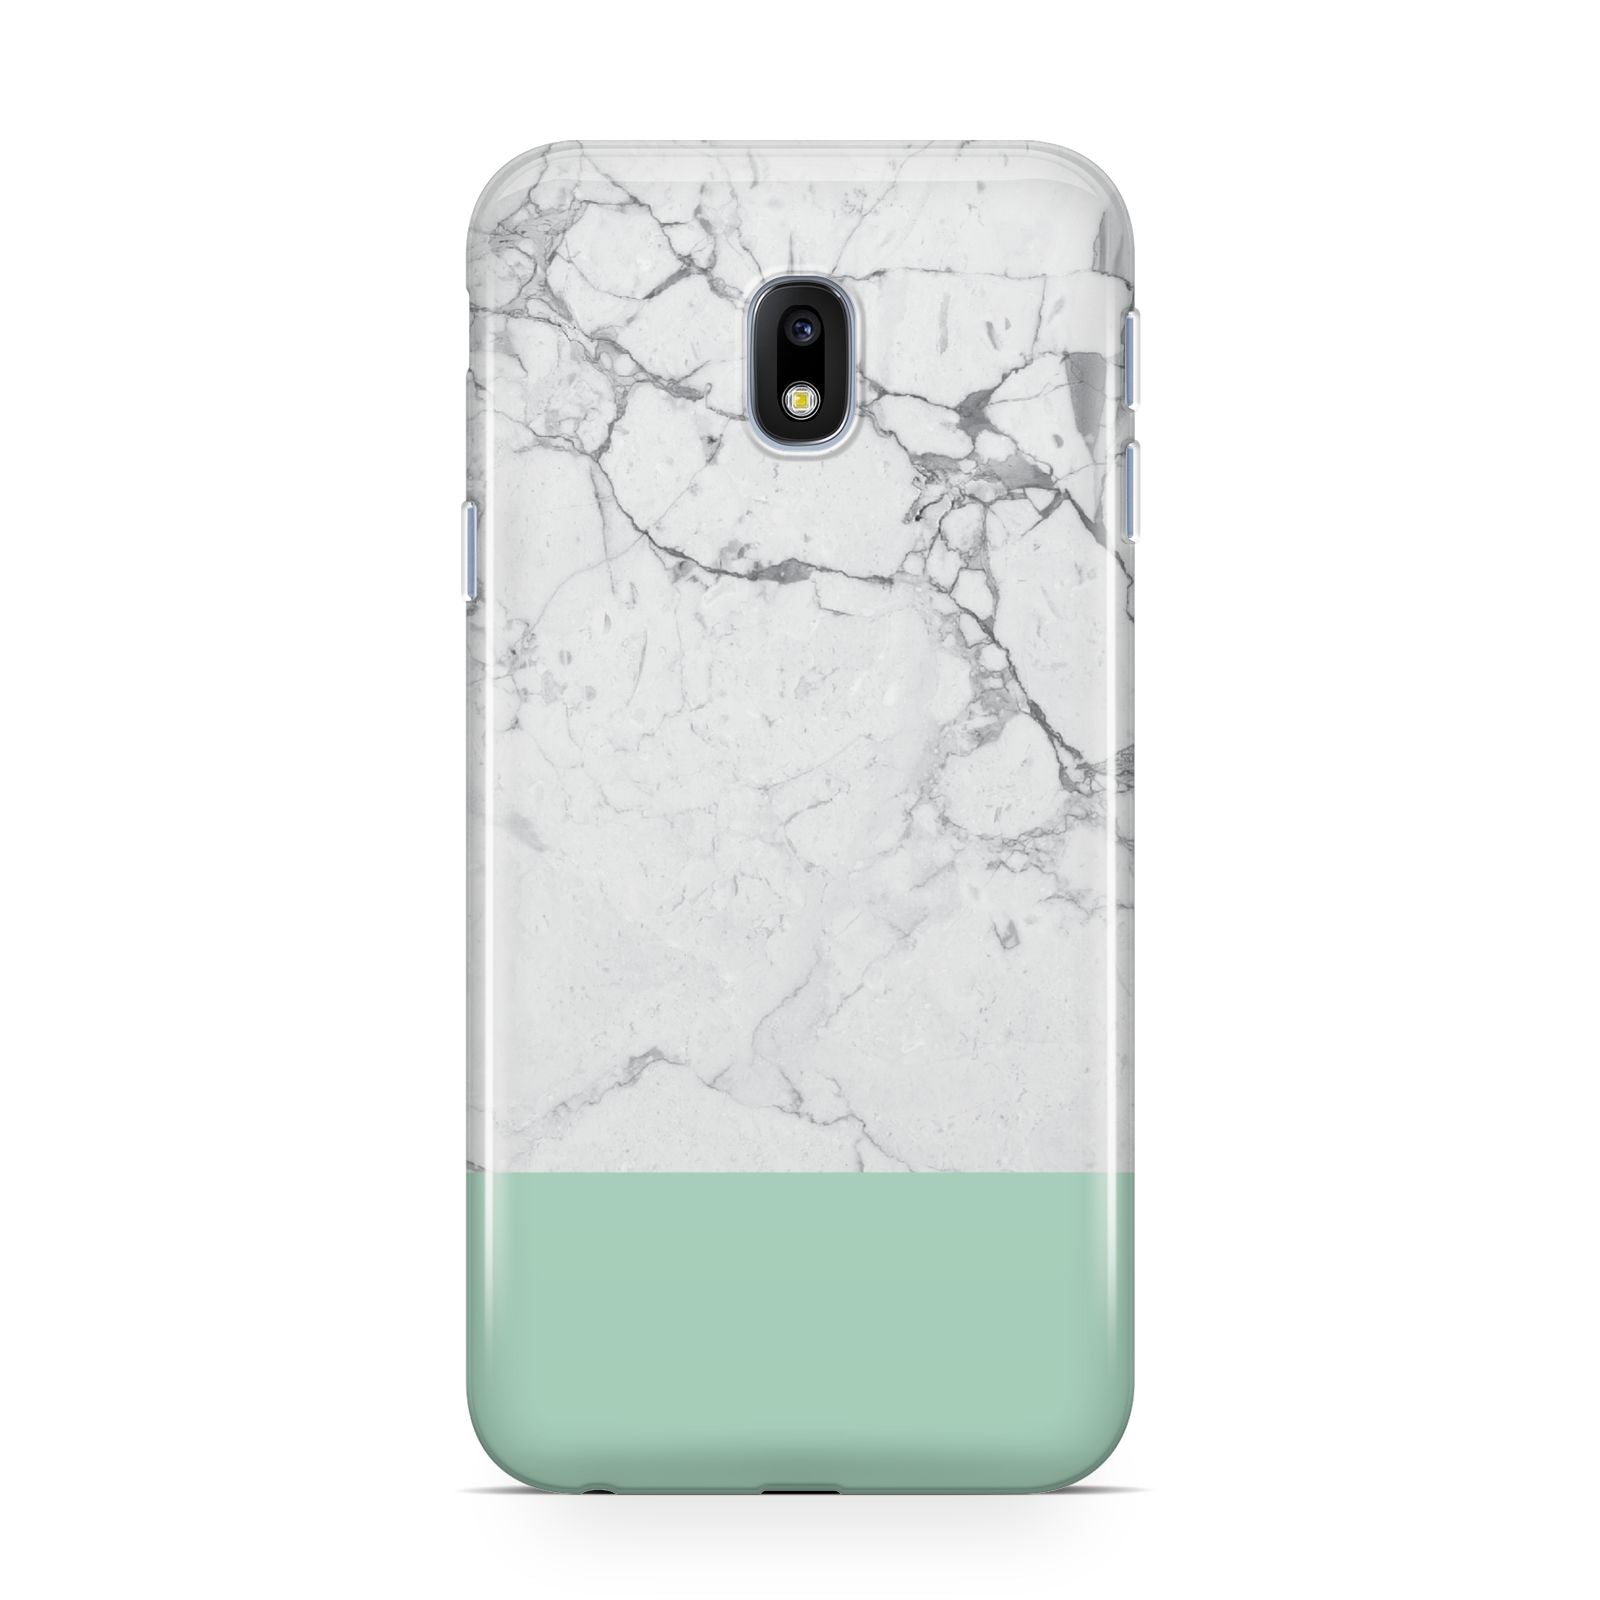 Marble White Carrara Green Samsung Galaxy J3 2017 Case